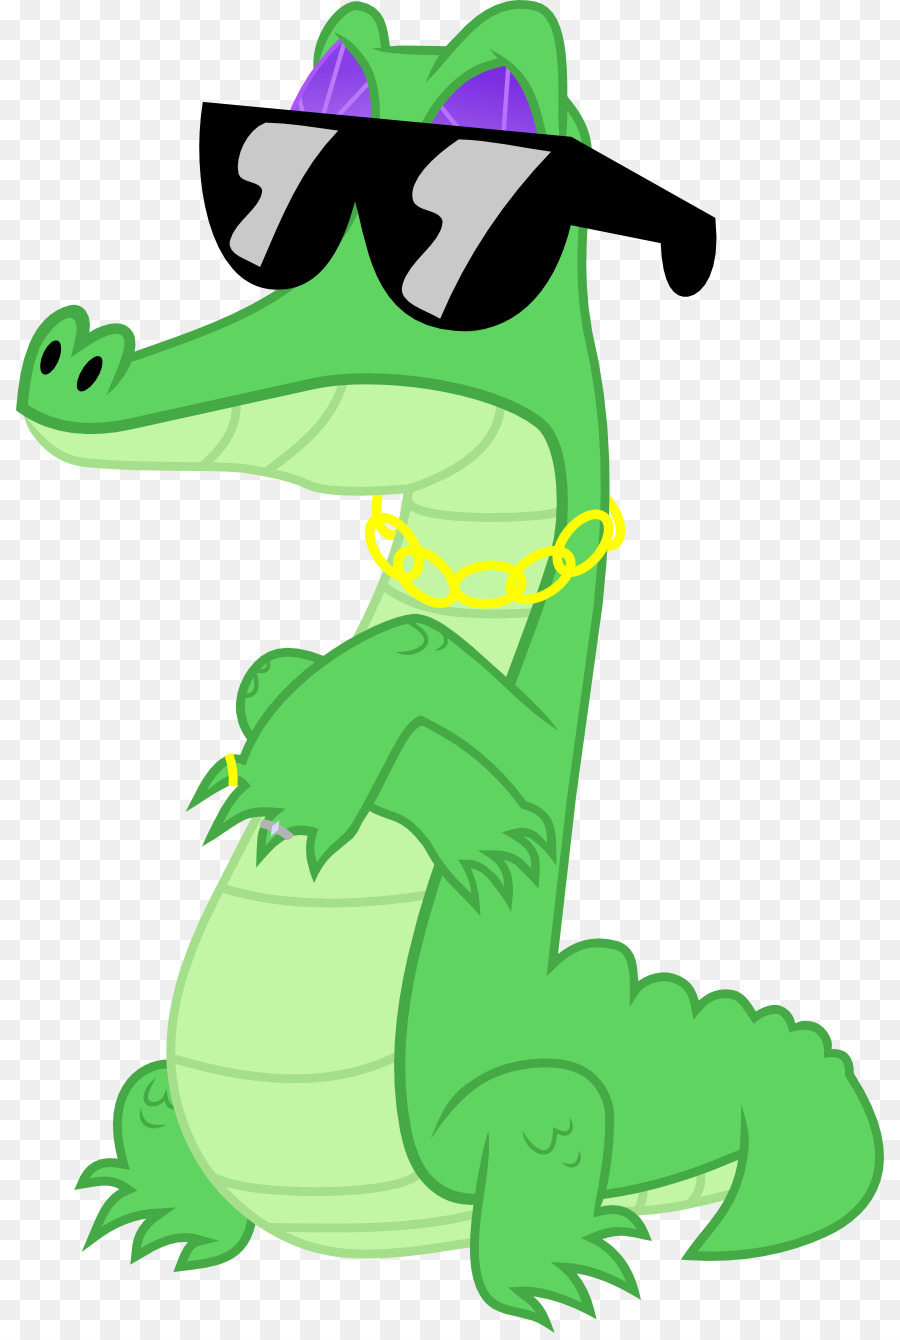 Alligator Crocodiles Pony Clip art - alligator png download - 868*1333 - Free Transparent Alligator png Download.